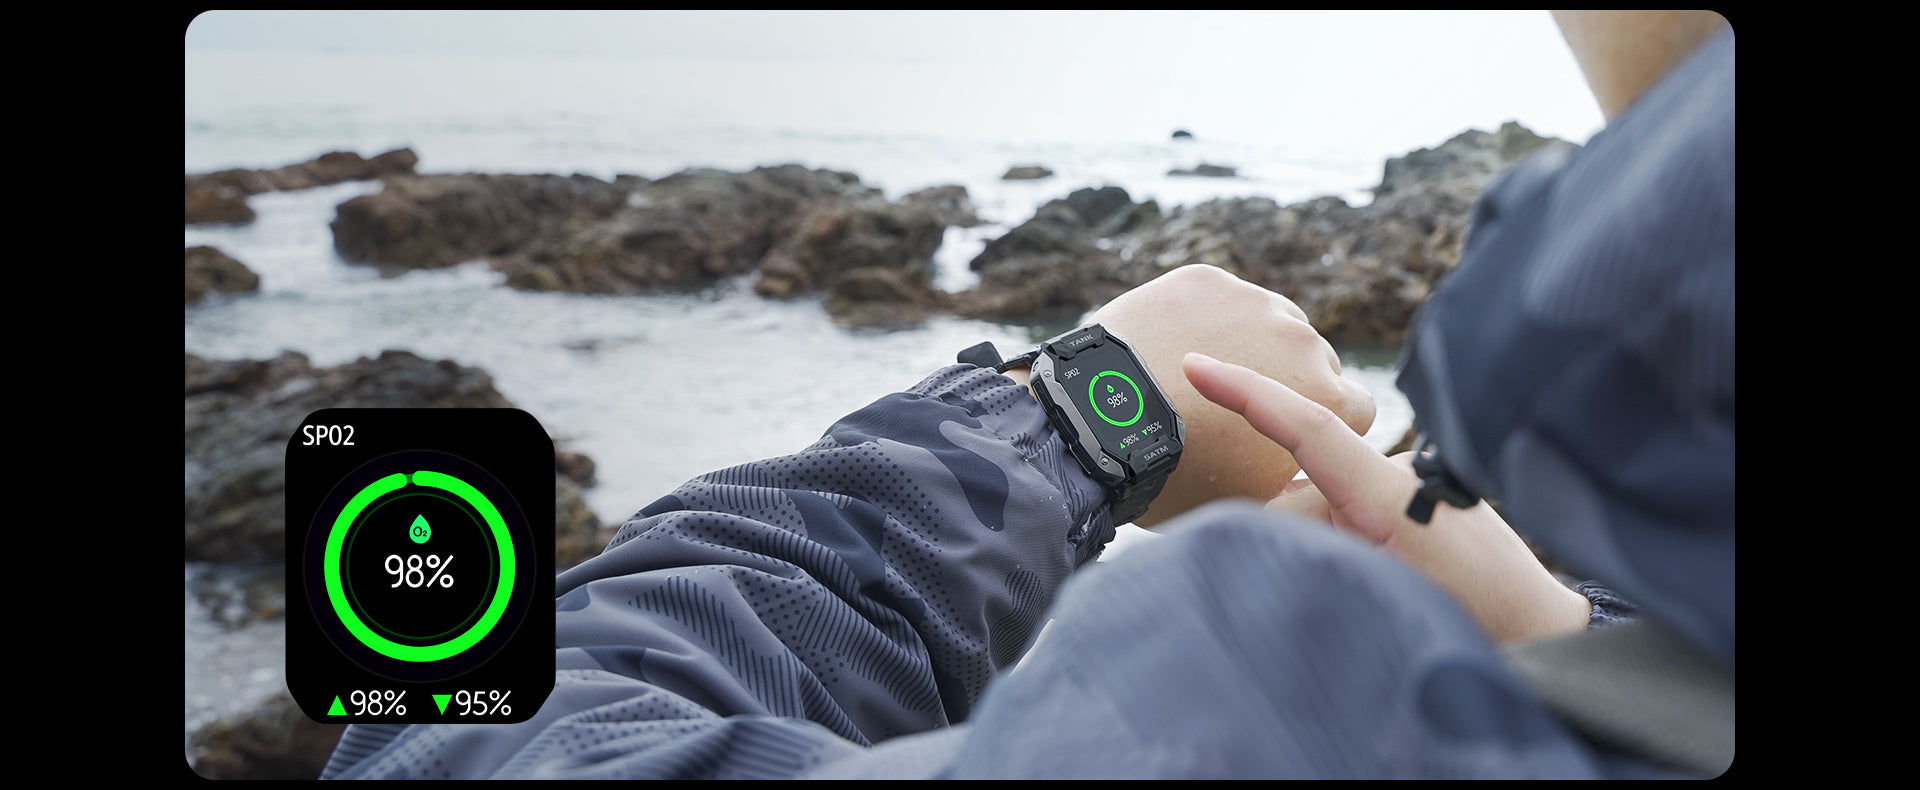 Το KOSPET TANK M1 Rugged Smartwatch υποστηρίζει οθόνη οξυγόνου αίματος